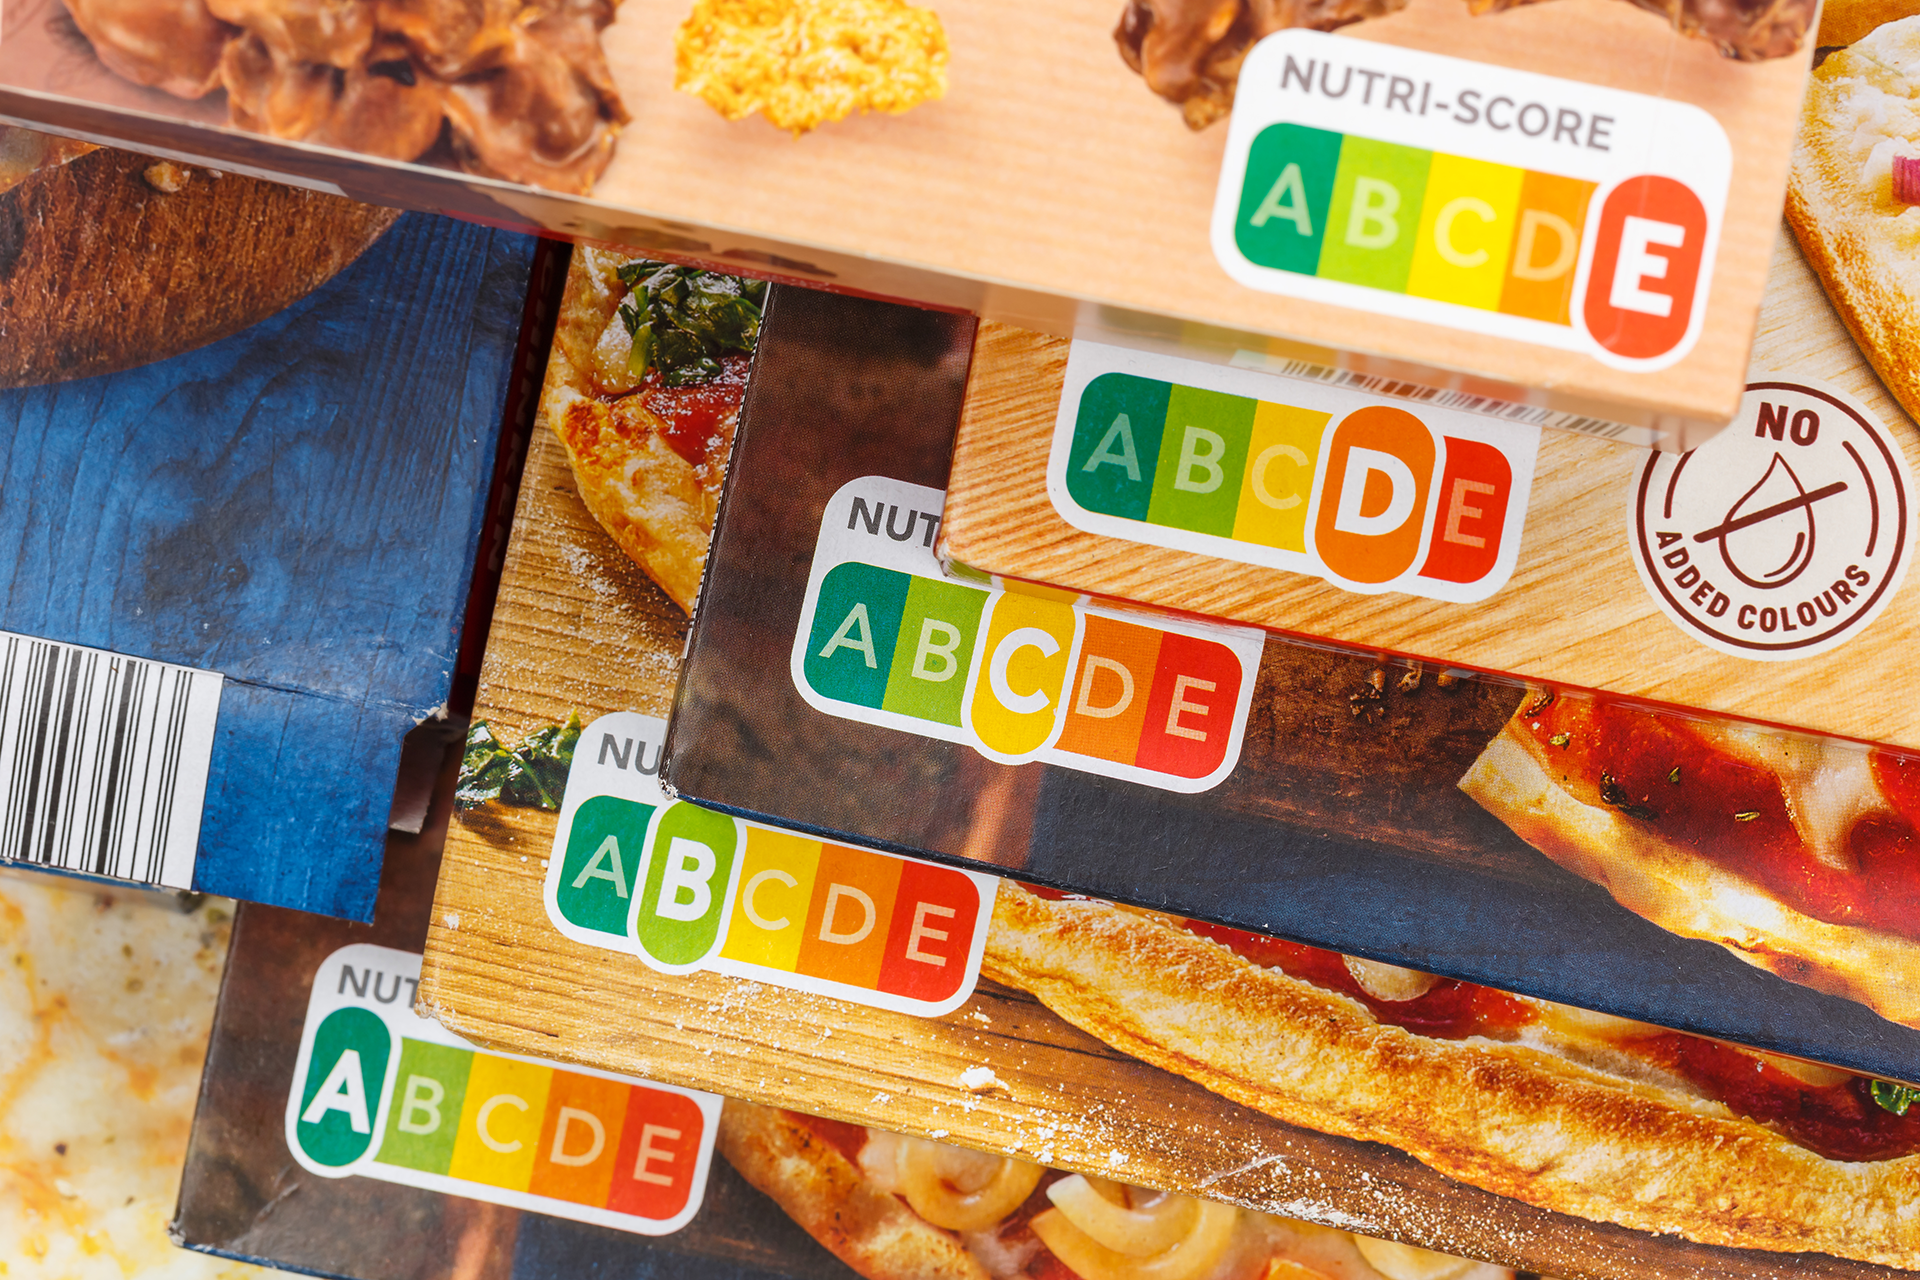 Verpackungen mit Nutri-Score von A bis E